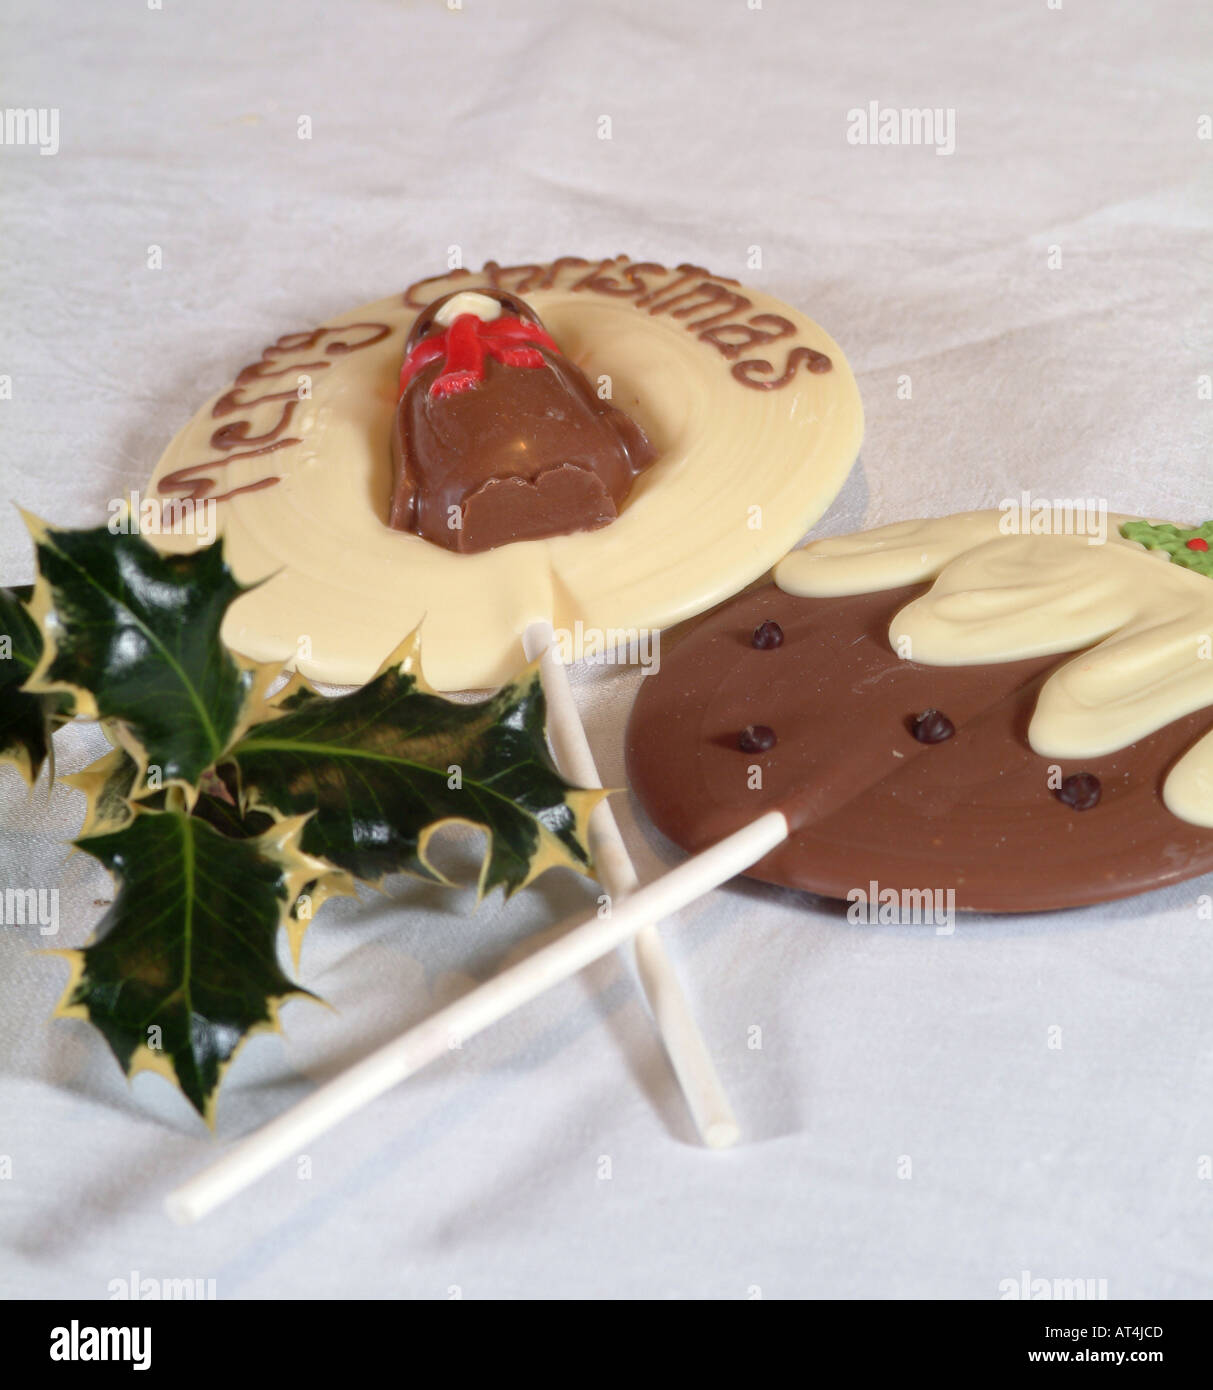 Sucettes au chocolat blanc et brun sur des bâtons sur un thème de Noël Banque D'Images